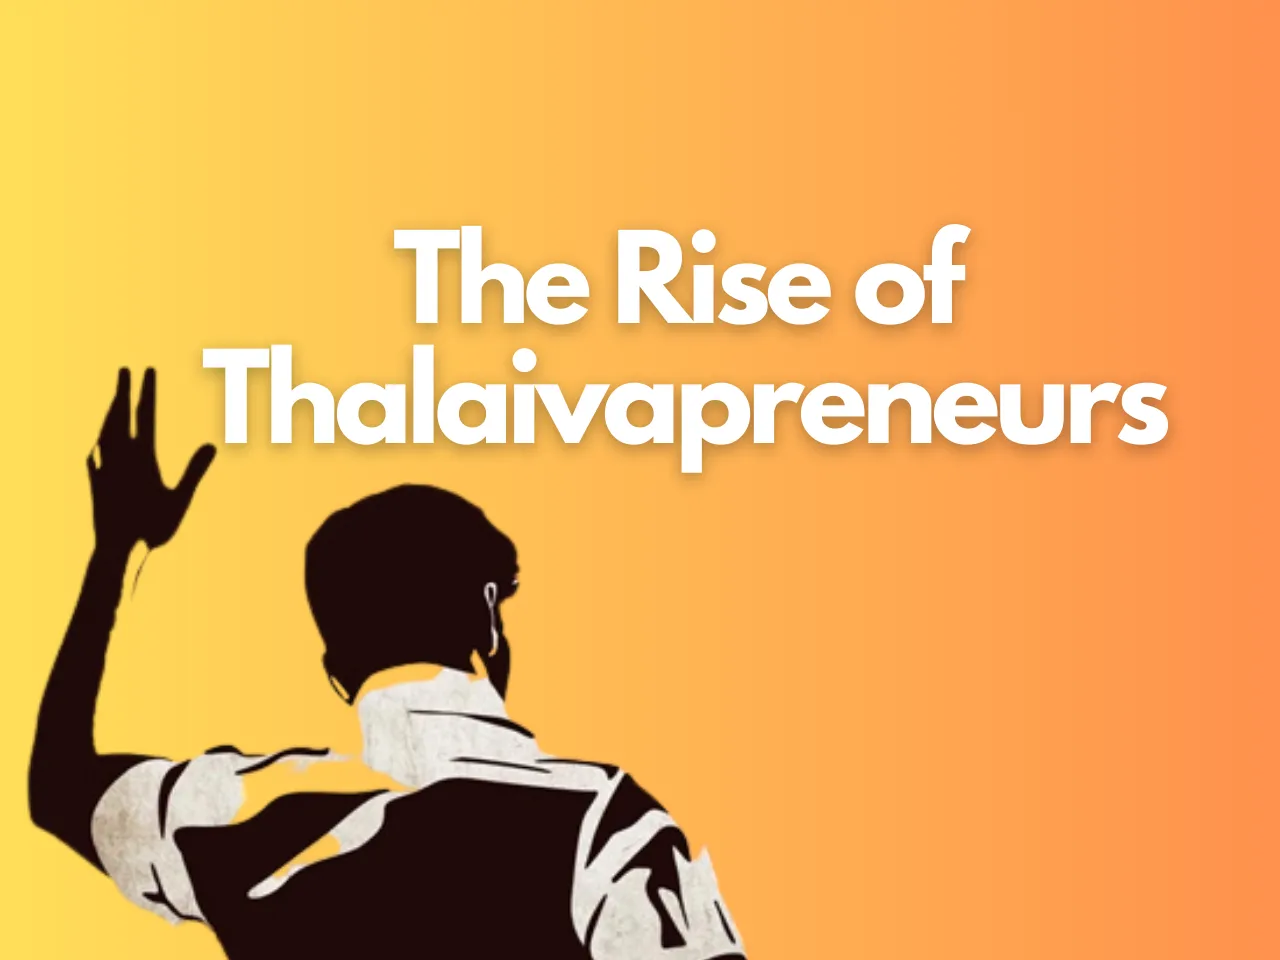 Thalaivapreneurs